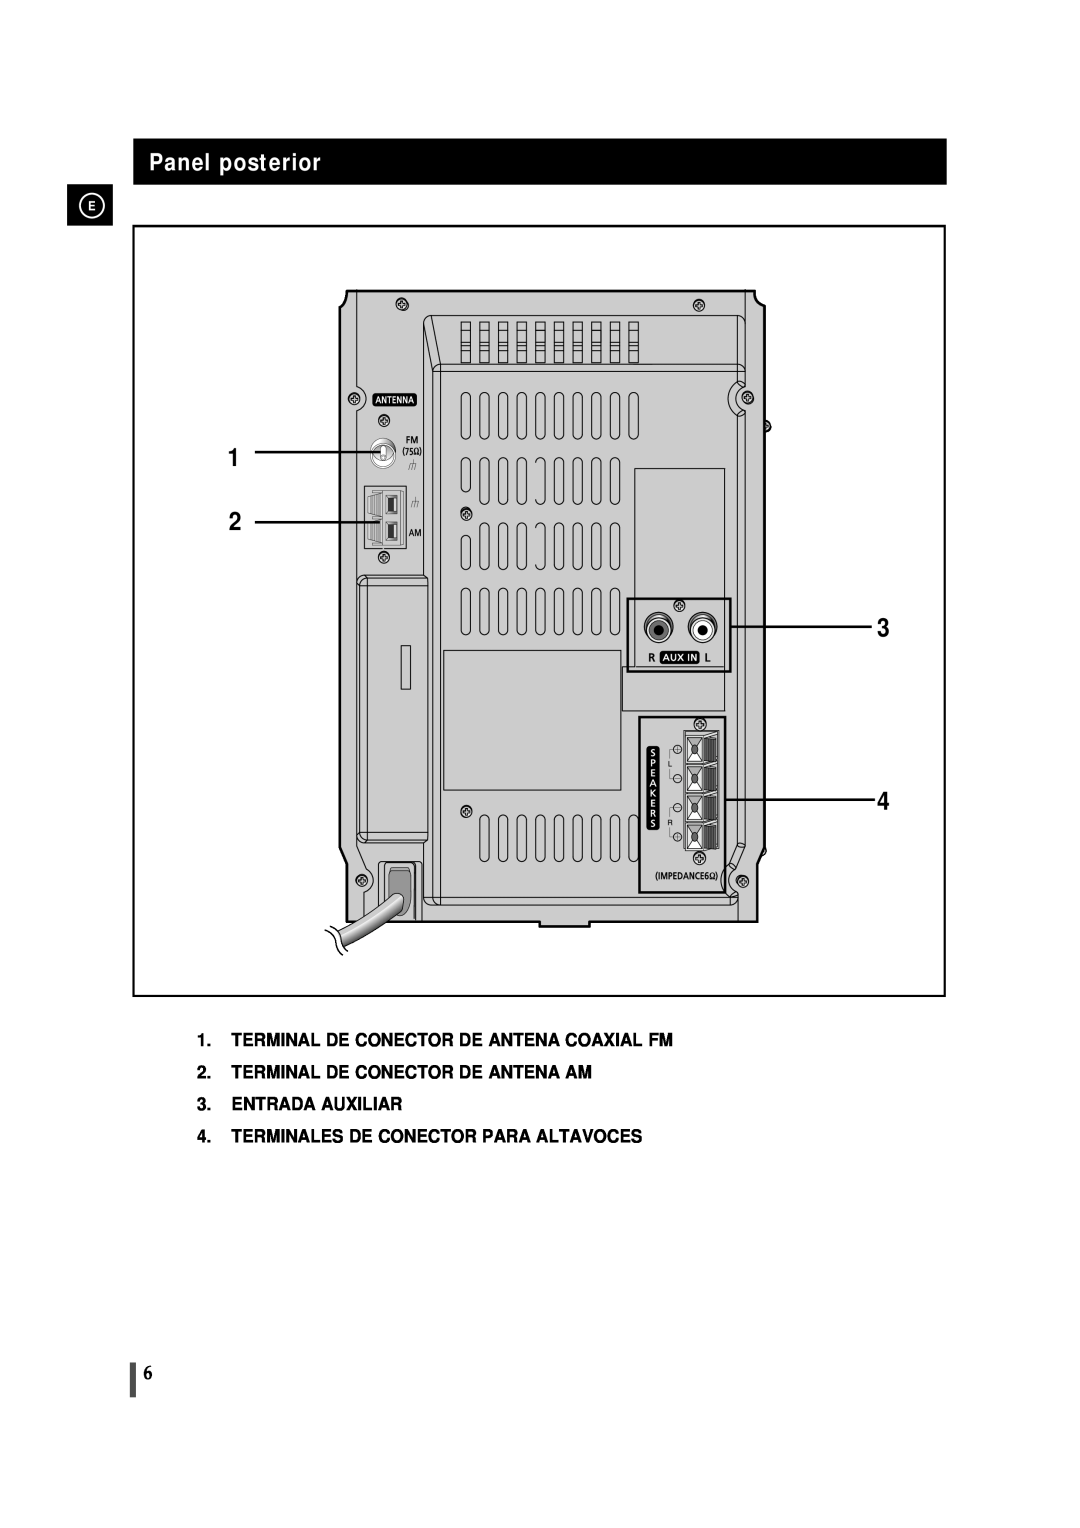 Samsung MM-J5 manual Panel posterior, Terminal De Conector De Antena Coaxial Fm, Terminales De Conector Para Altavoces 